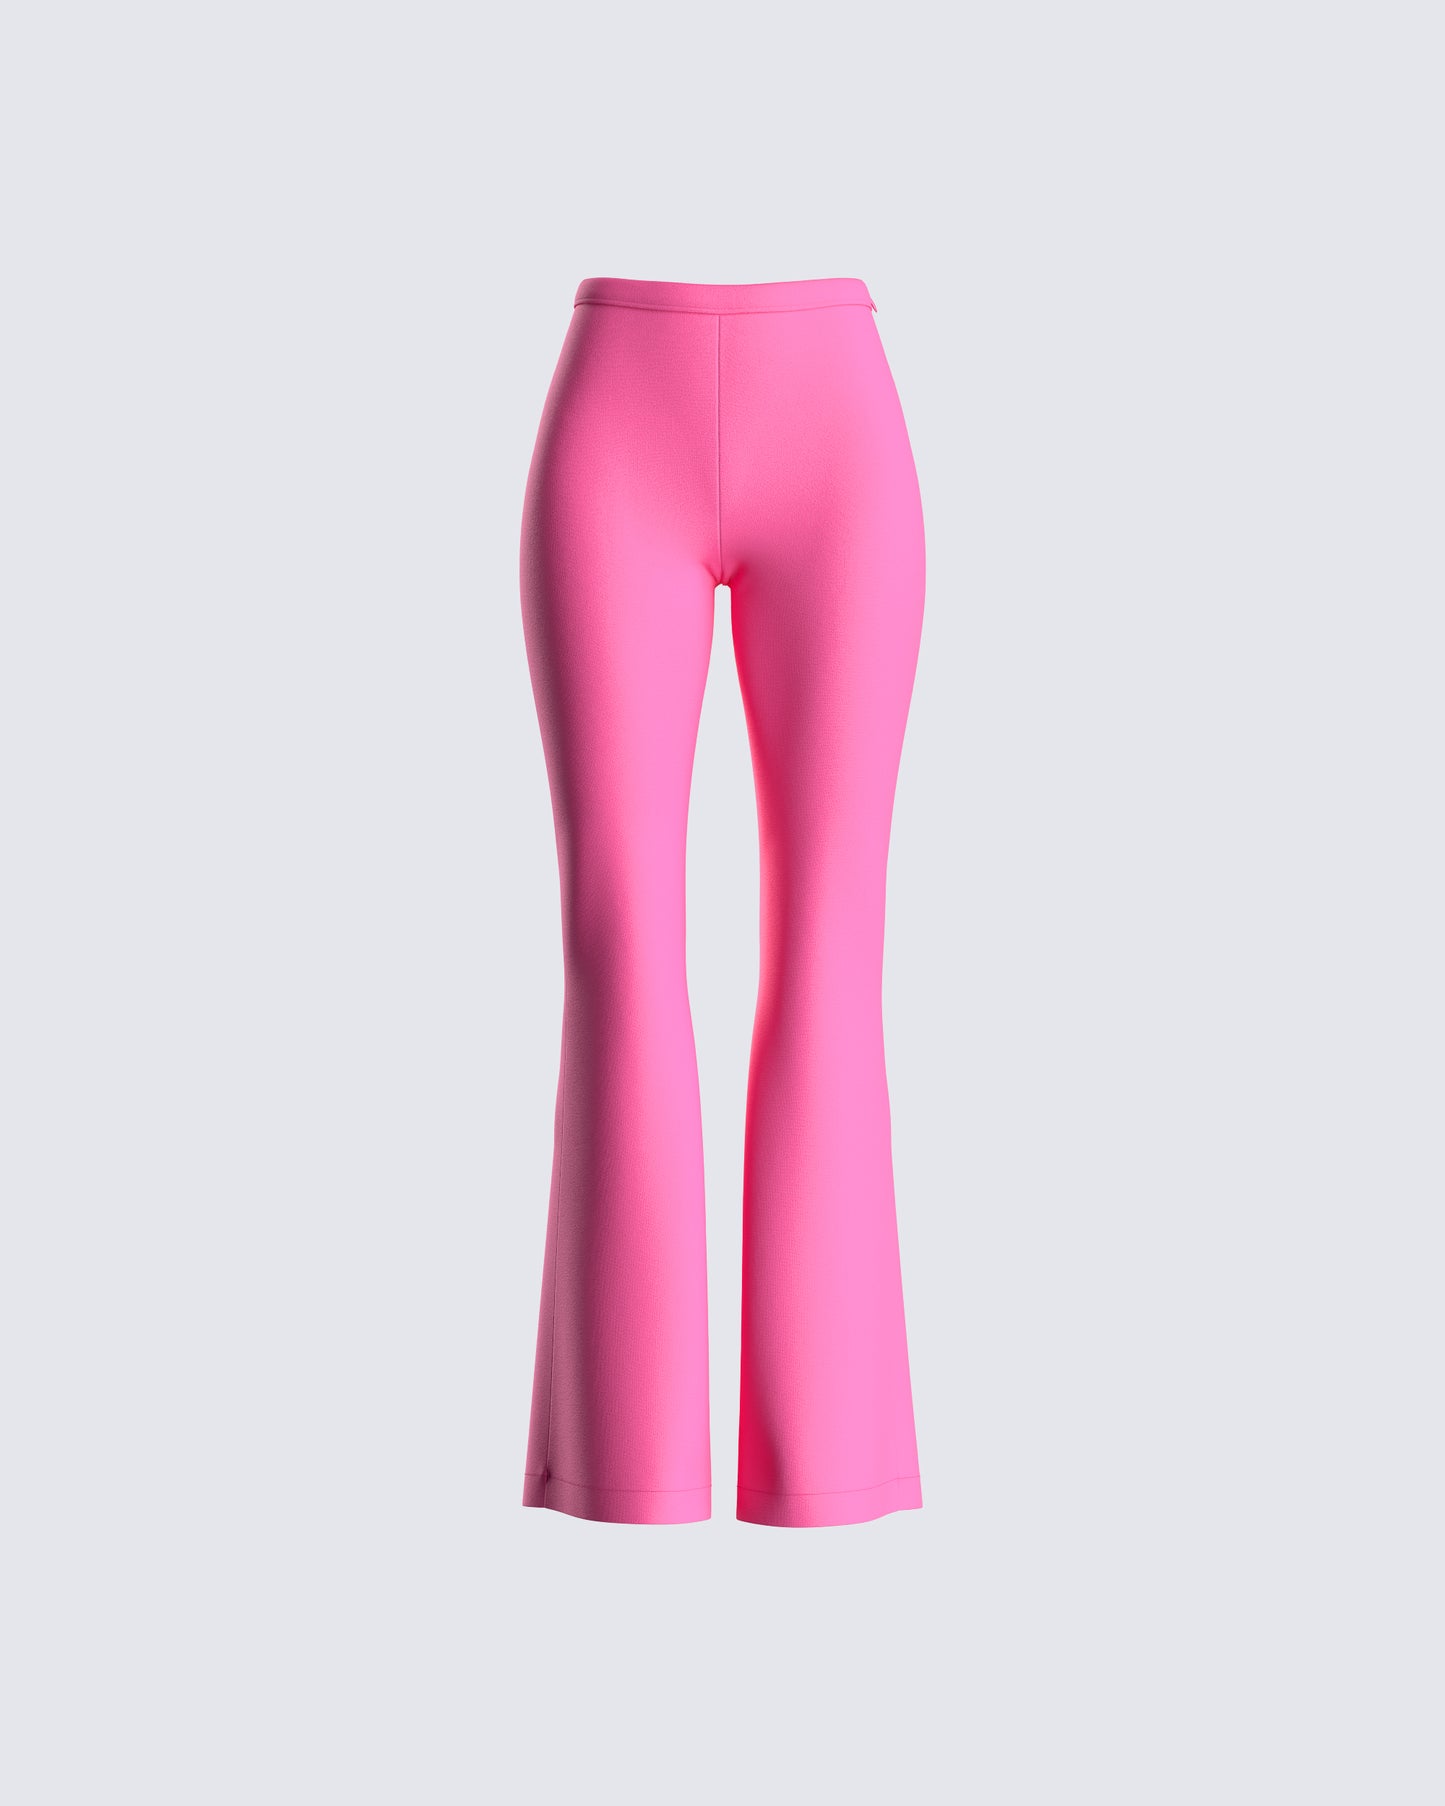 Moke  Indiana Women's Wide Leg Pants - Fondant Pink - Moke Apparel